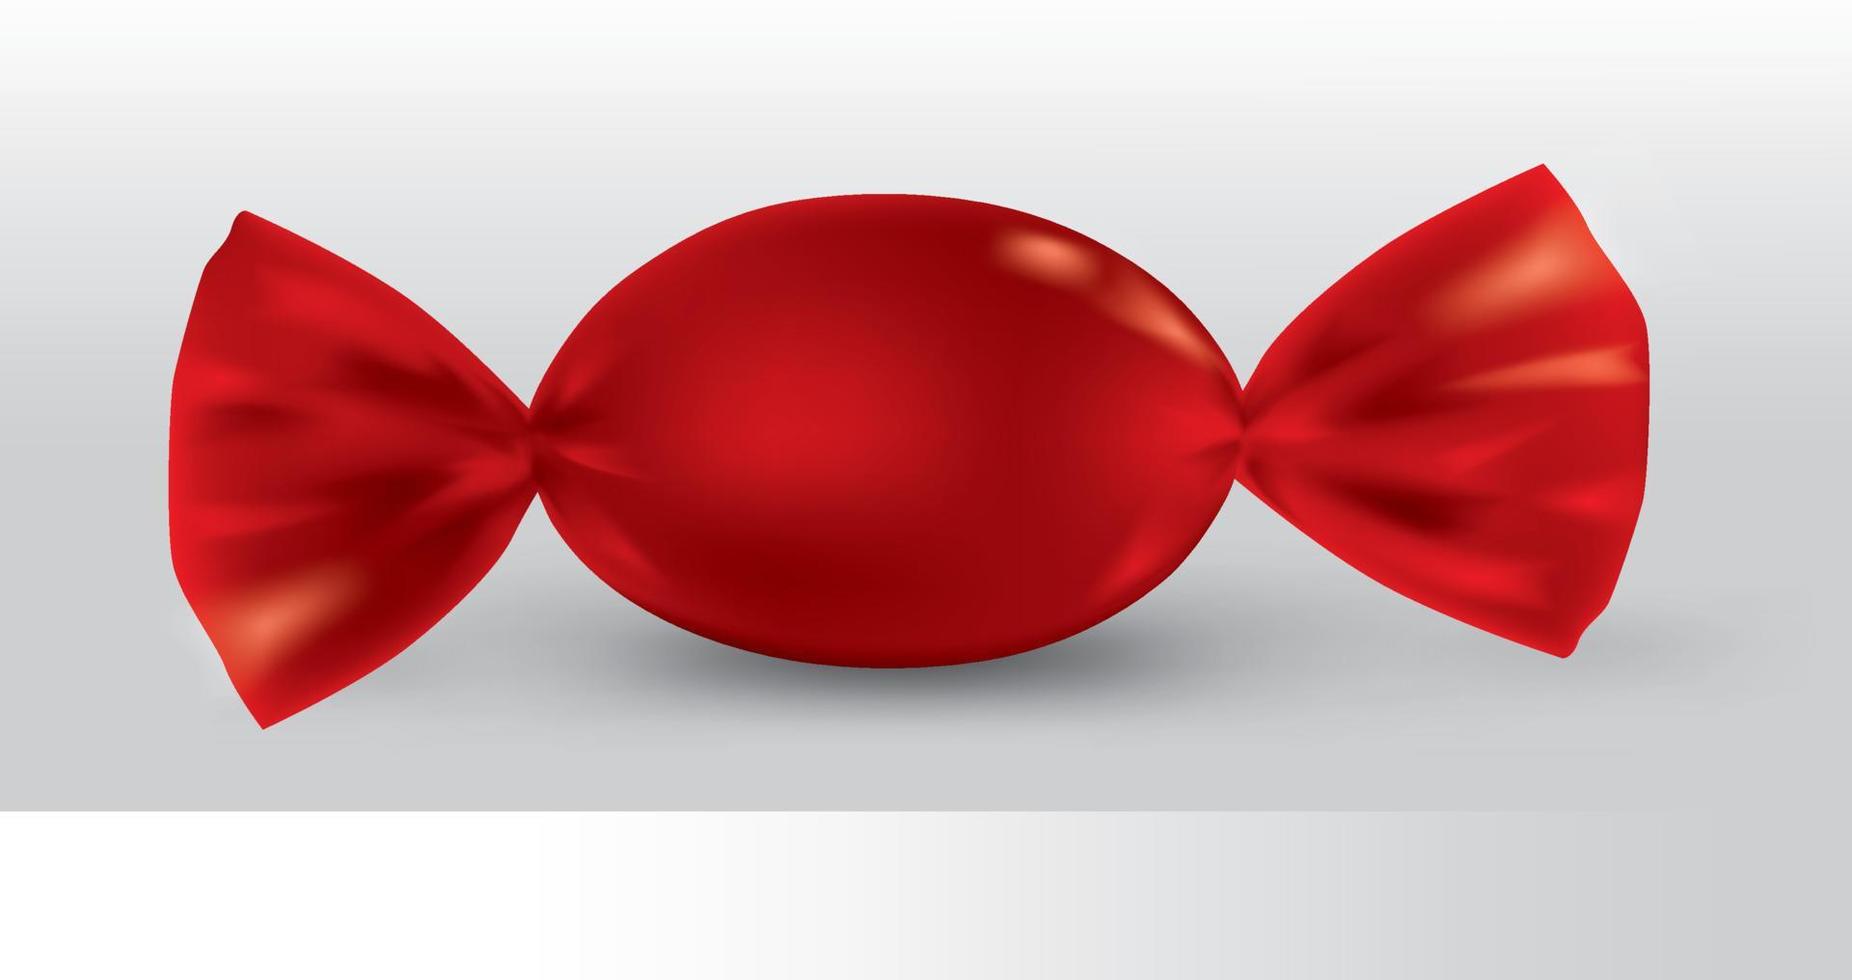 confezione di caramelle ovali rosse per un nuovo design, isolamento del prodotto su sfondo bianco con riflessi e colore rosso saldante. vettore